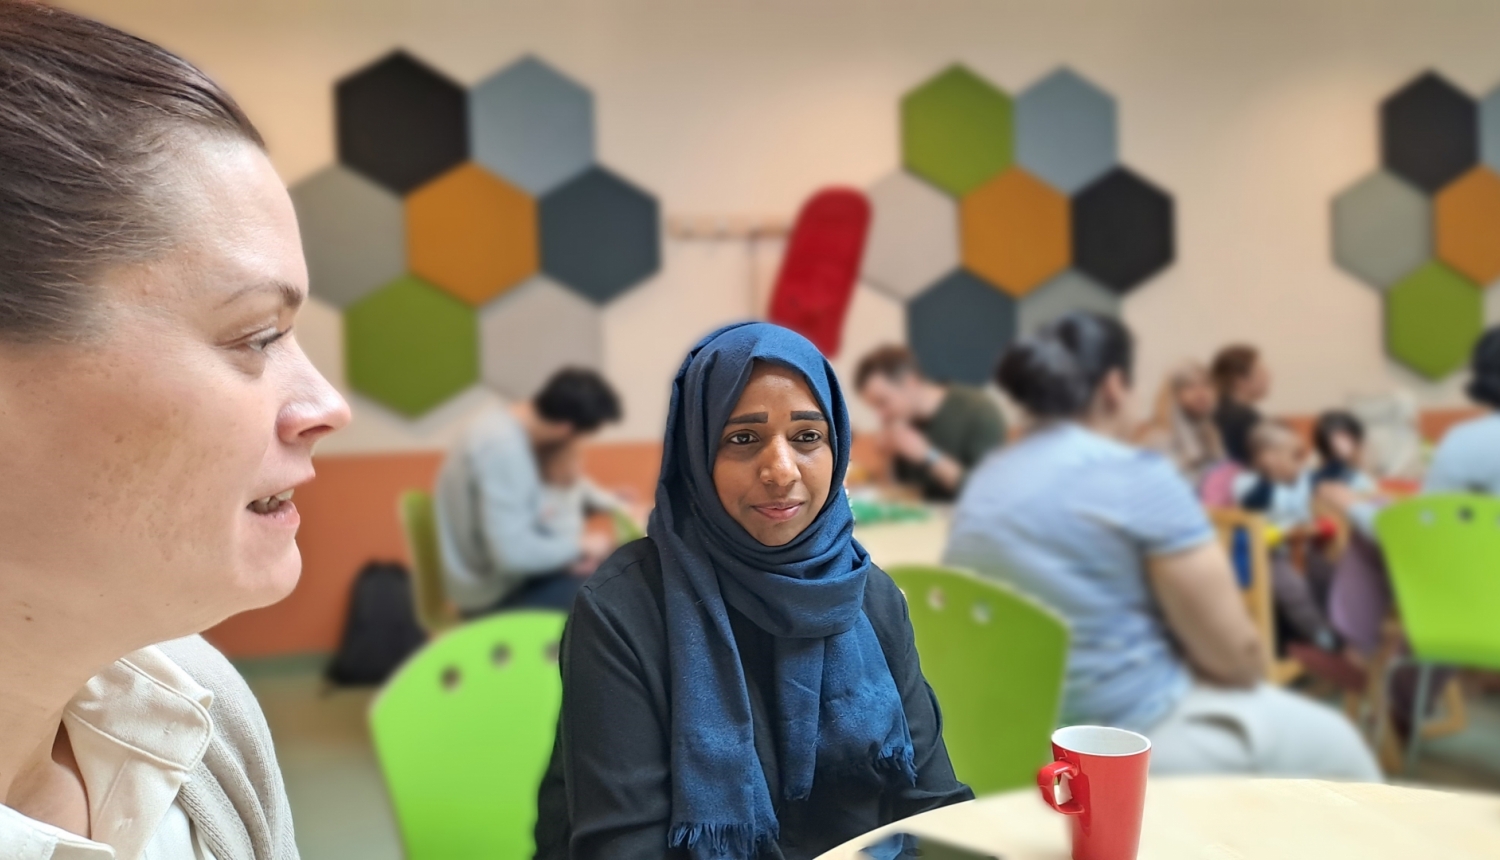 Zviedrijā sastaptā sieviete no Palestīnas sēž kafejnīcā